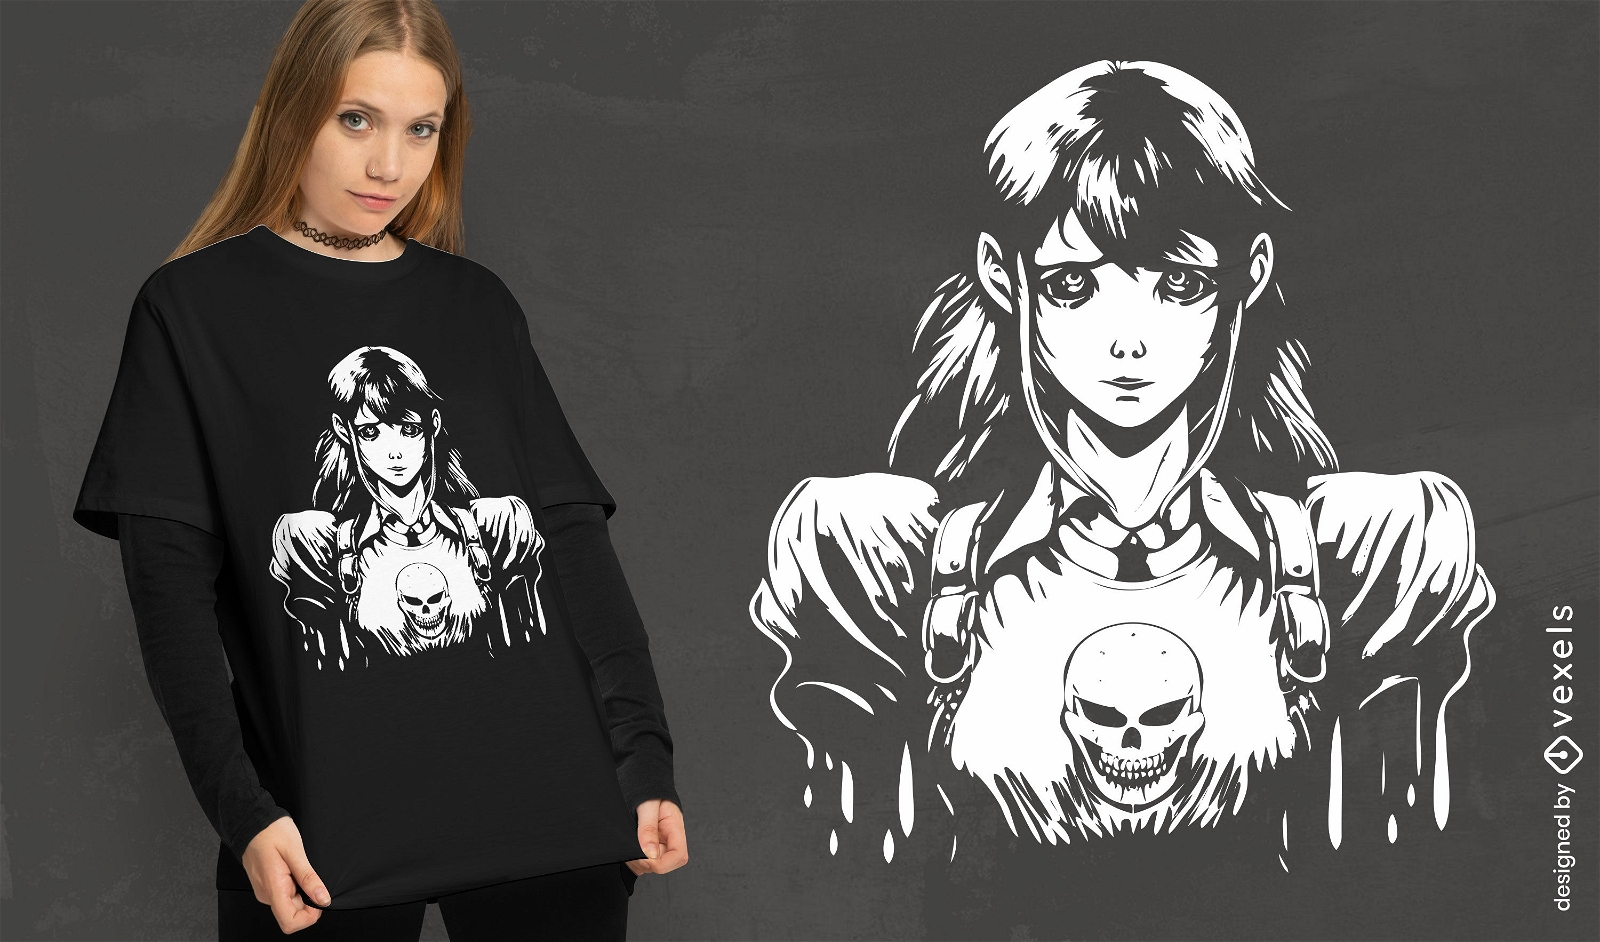 Diseño de camiseta de chica pesadilla anime